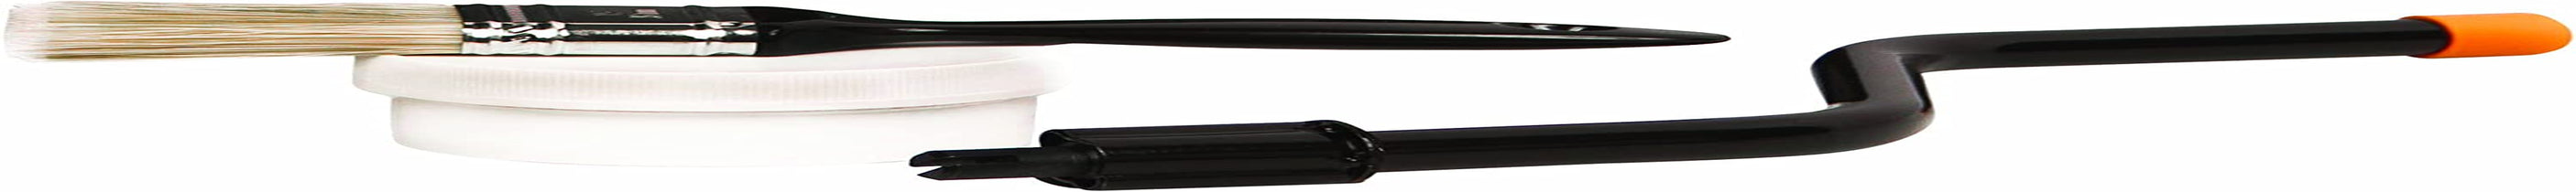 Fiskars, Fiskars 362150-1001 Reel Mower Maintenance Blade Kit